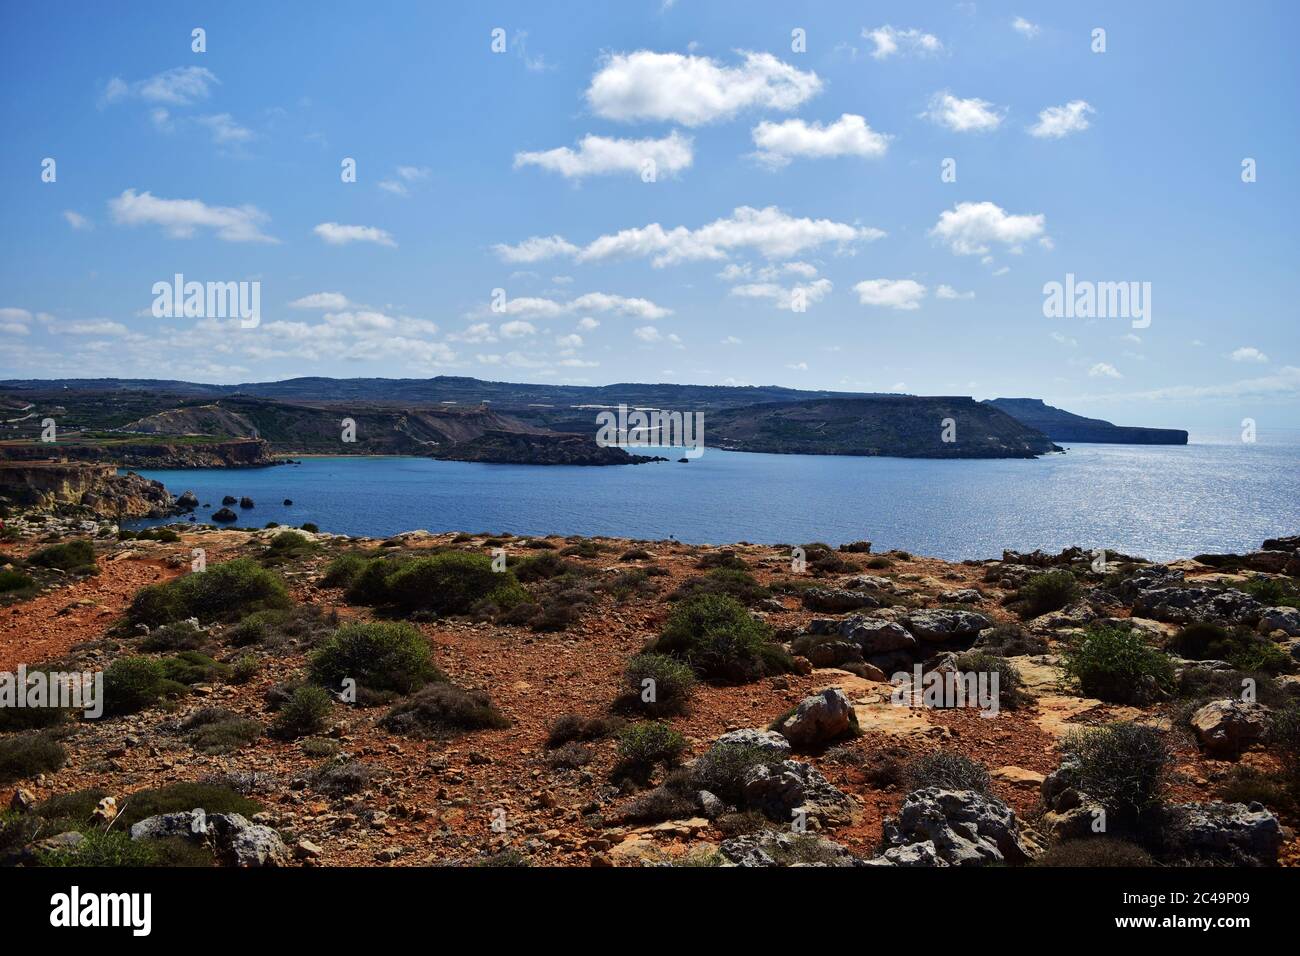 MELLIEHA, MALTA - 12. Okt 2014: Küstenlinie und Klippen von Ghajn Tuffieha und Golden Bay in Malta, zeigt Beweise für die Verwitterung und Erosion der Klippen, cli Stockfoto